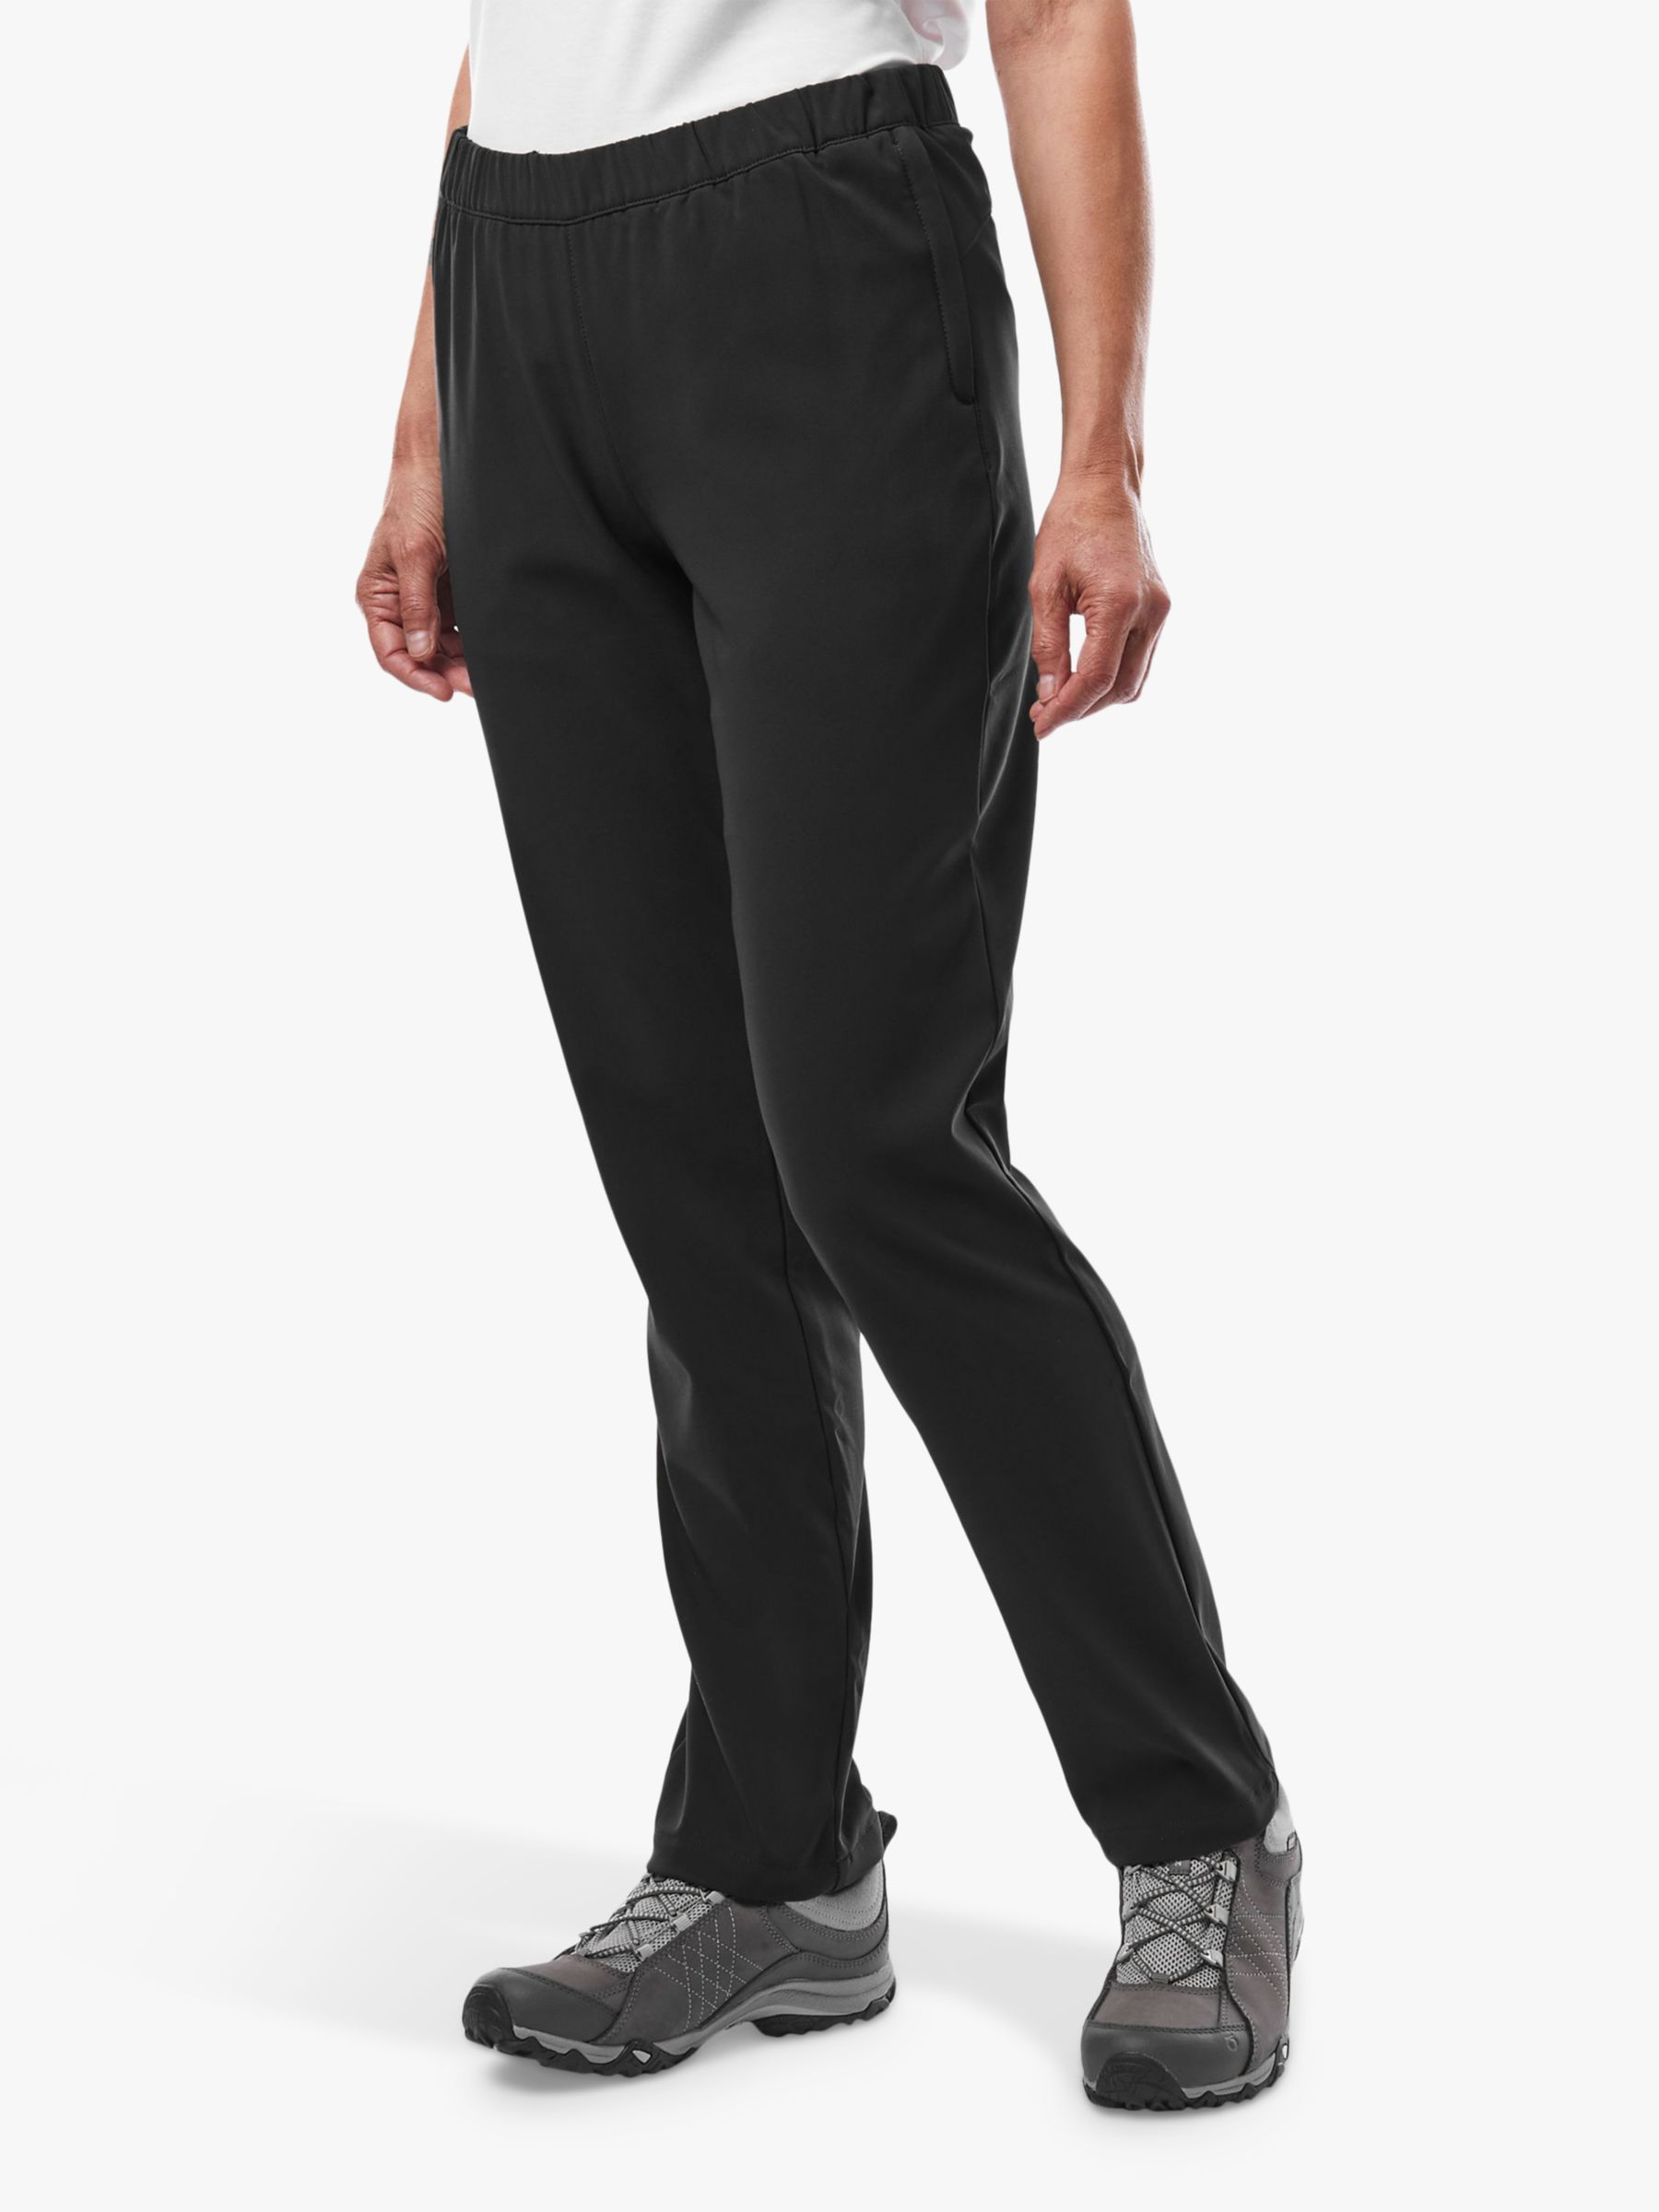 St. John's Bay Elastic Waist Athletic Pants for Women